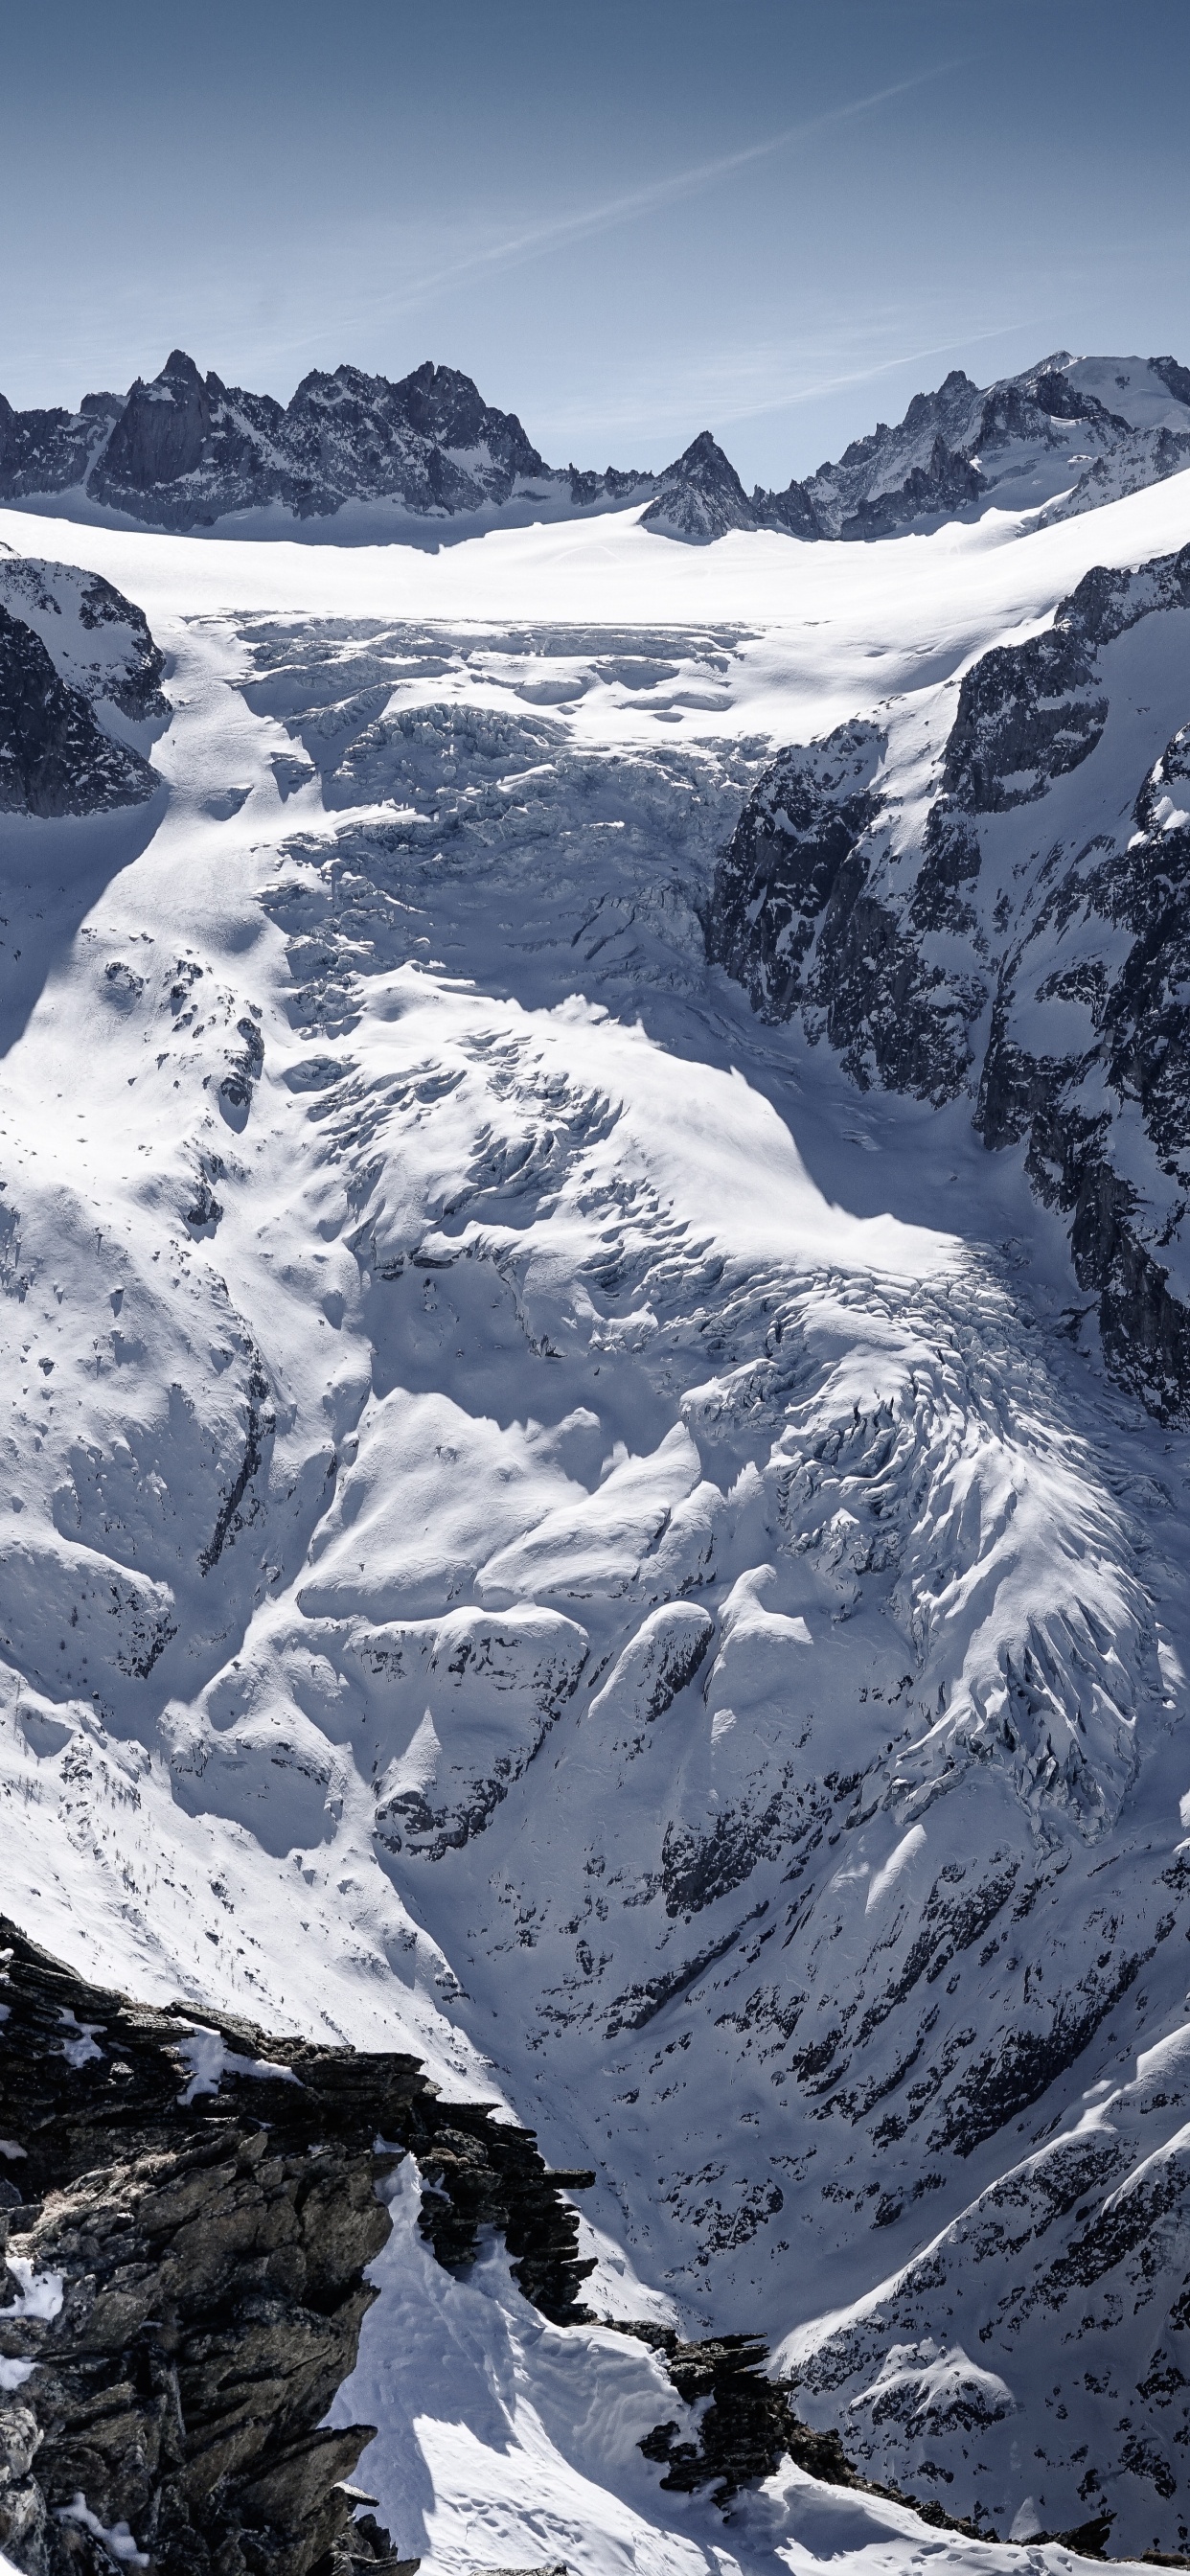 Las Formaciones Montañosas, Montaña, Glaciar de Terreno, Macizo, Alpes. Wallpaper in 1242x2688 Resolution